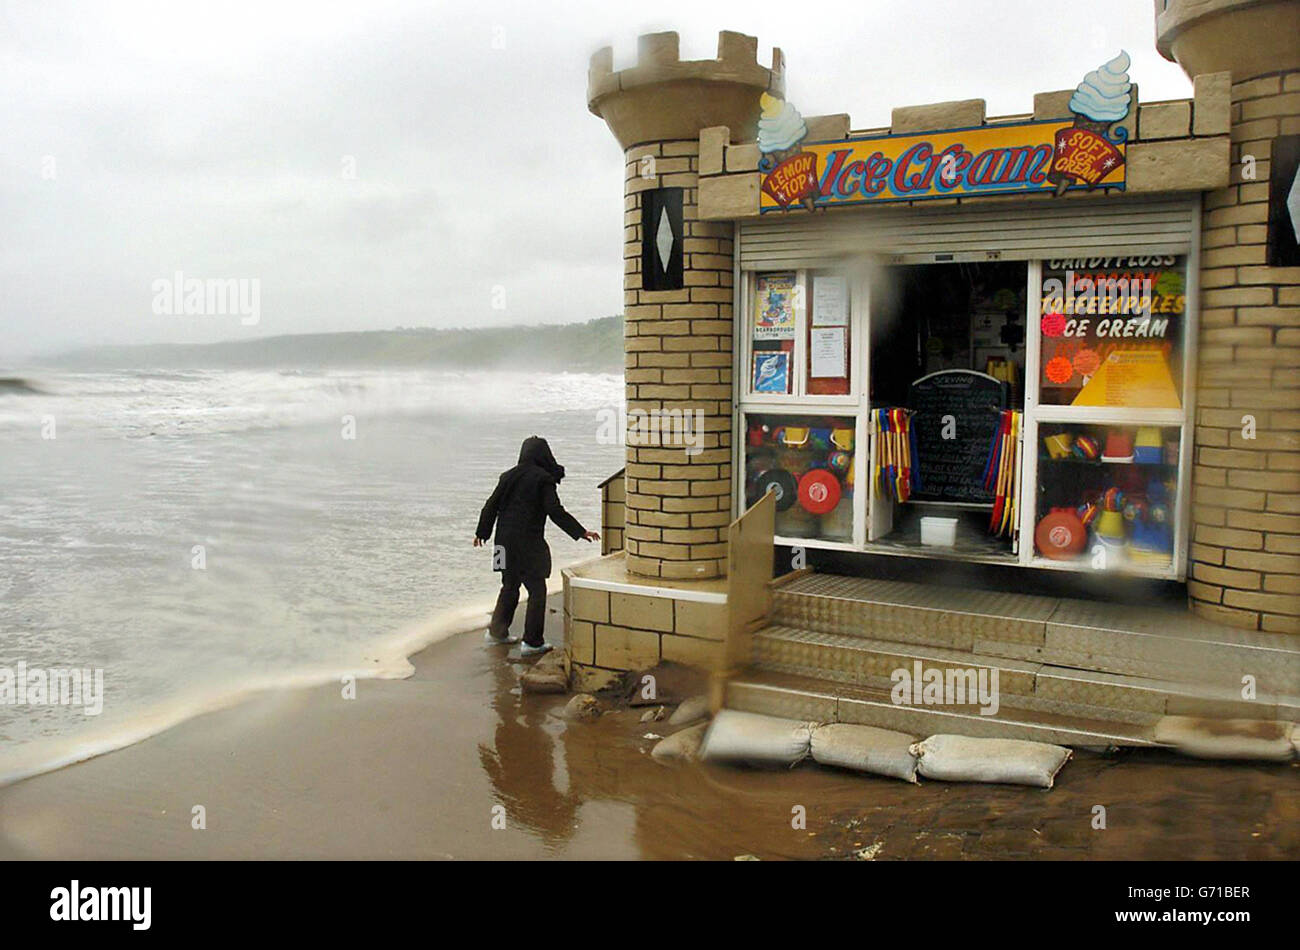 Eine Ladenbesitzerin stapelt Sandsäcke, um ihre Räumlichkeiten zu schützen, während Sturmwind, Flut und sintflutartiger Regen den Strand von Scarborough überfluten. Während sich Großbritannien von einigen der schlimmsten Sommerstürme erholt, die es je gab, waren Tausende von Häusern immer noch ohne Strom. Stockfoto